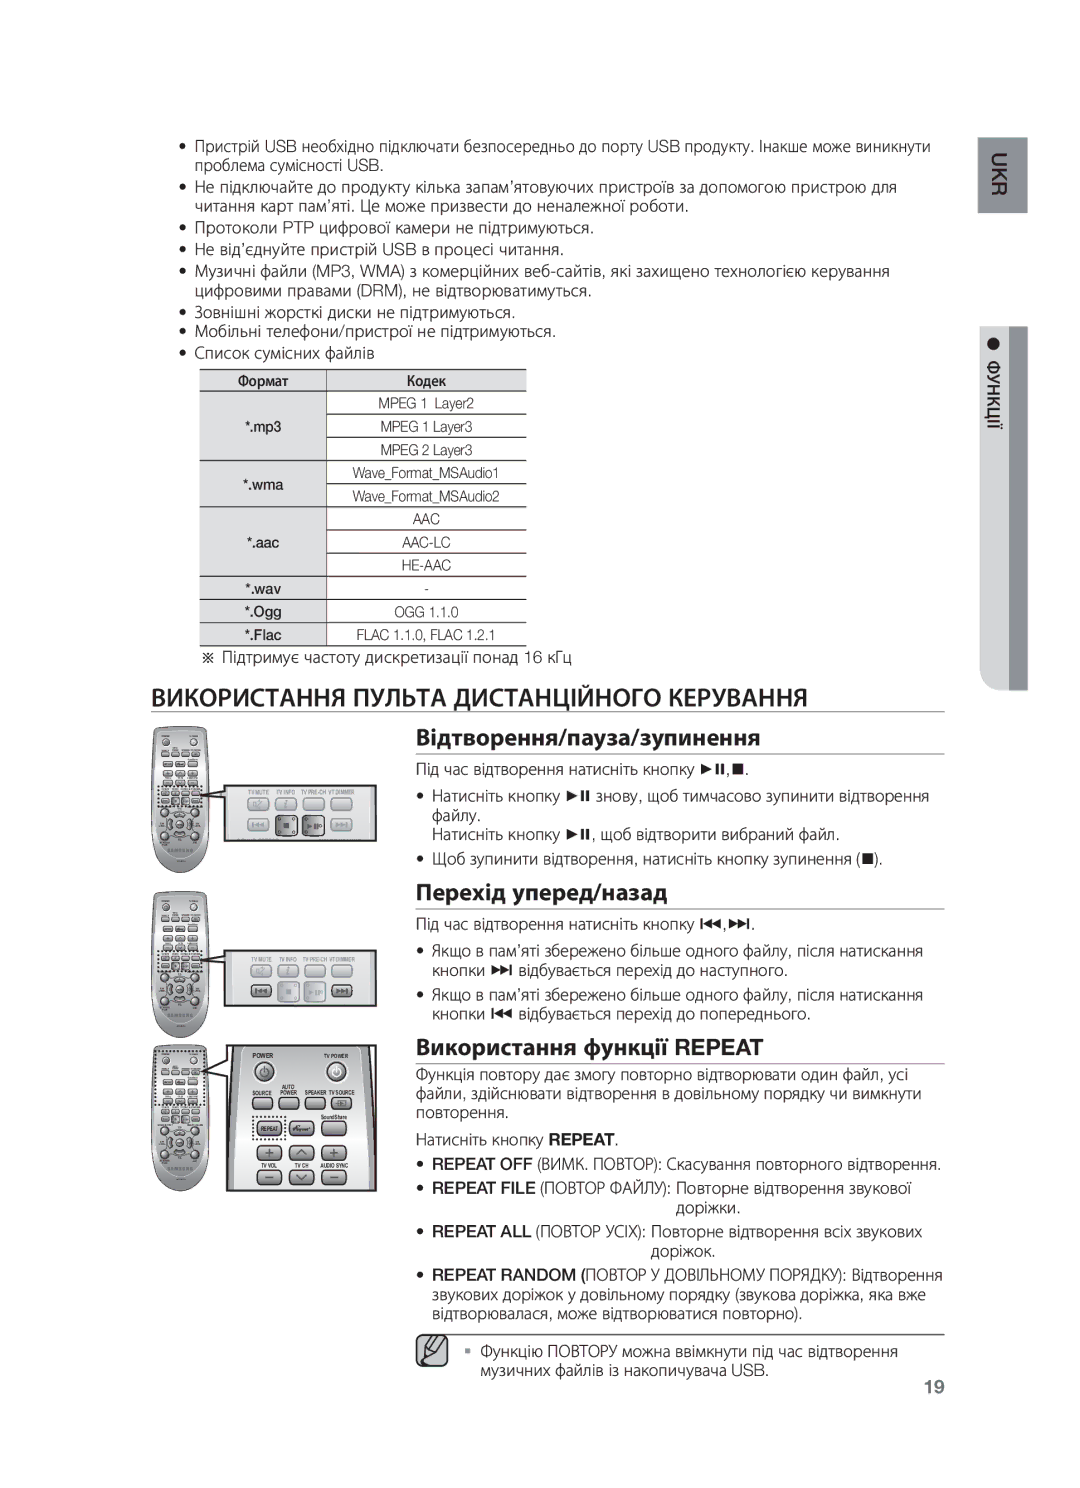 Samsung HW-F750/RU manual Використання Пульта Дистанційного Керування, Відтворення/пауза/зупинення, Перехід уперед/назад 